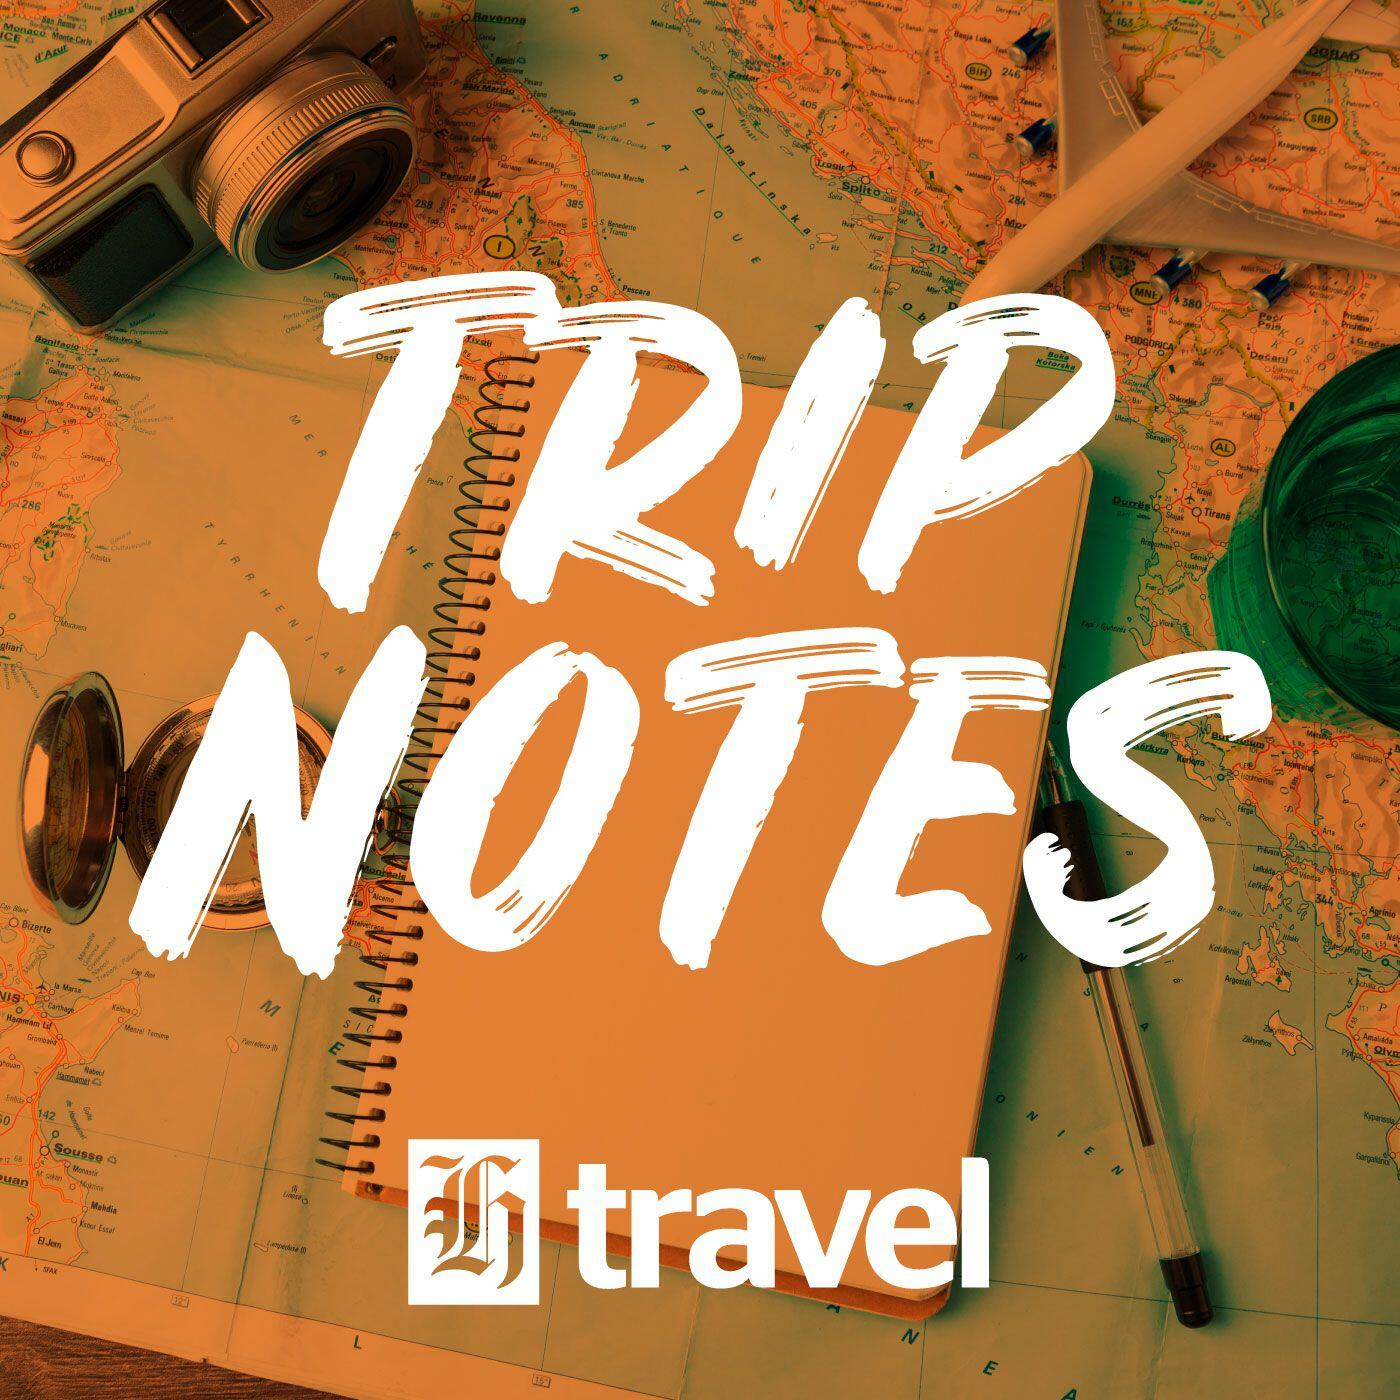 trip notes.com